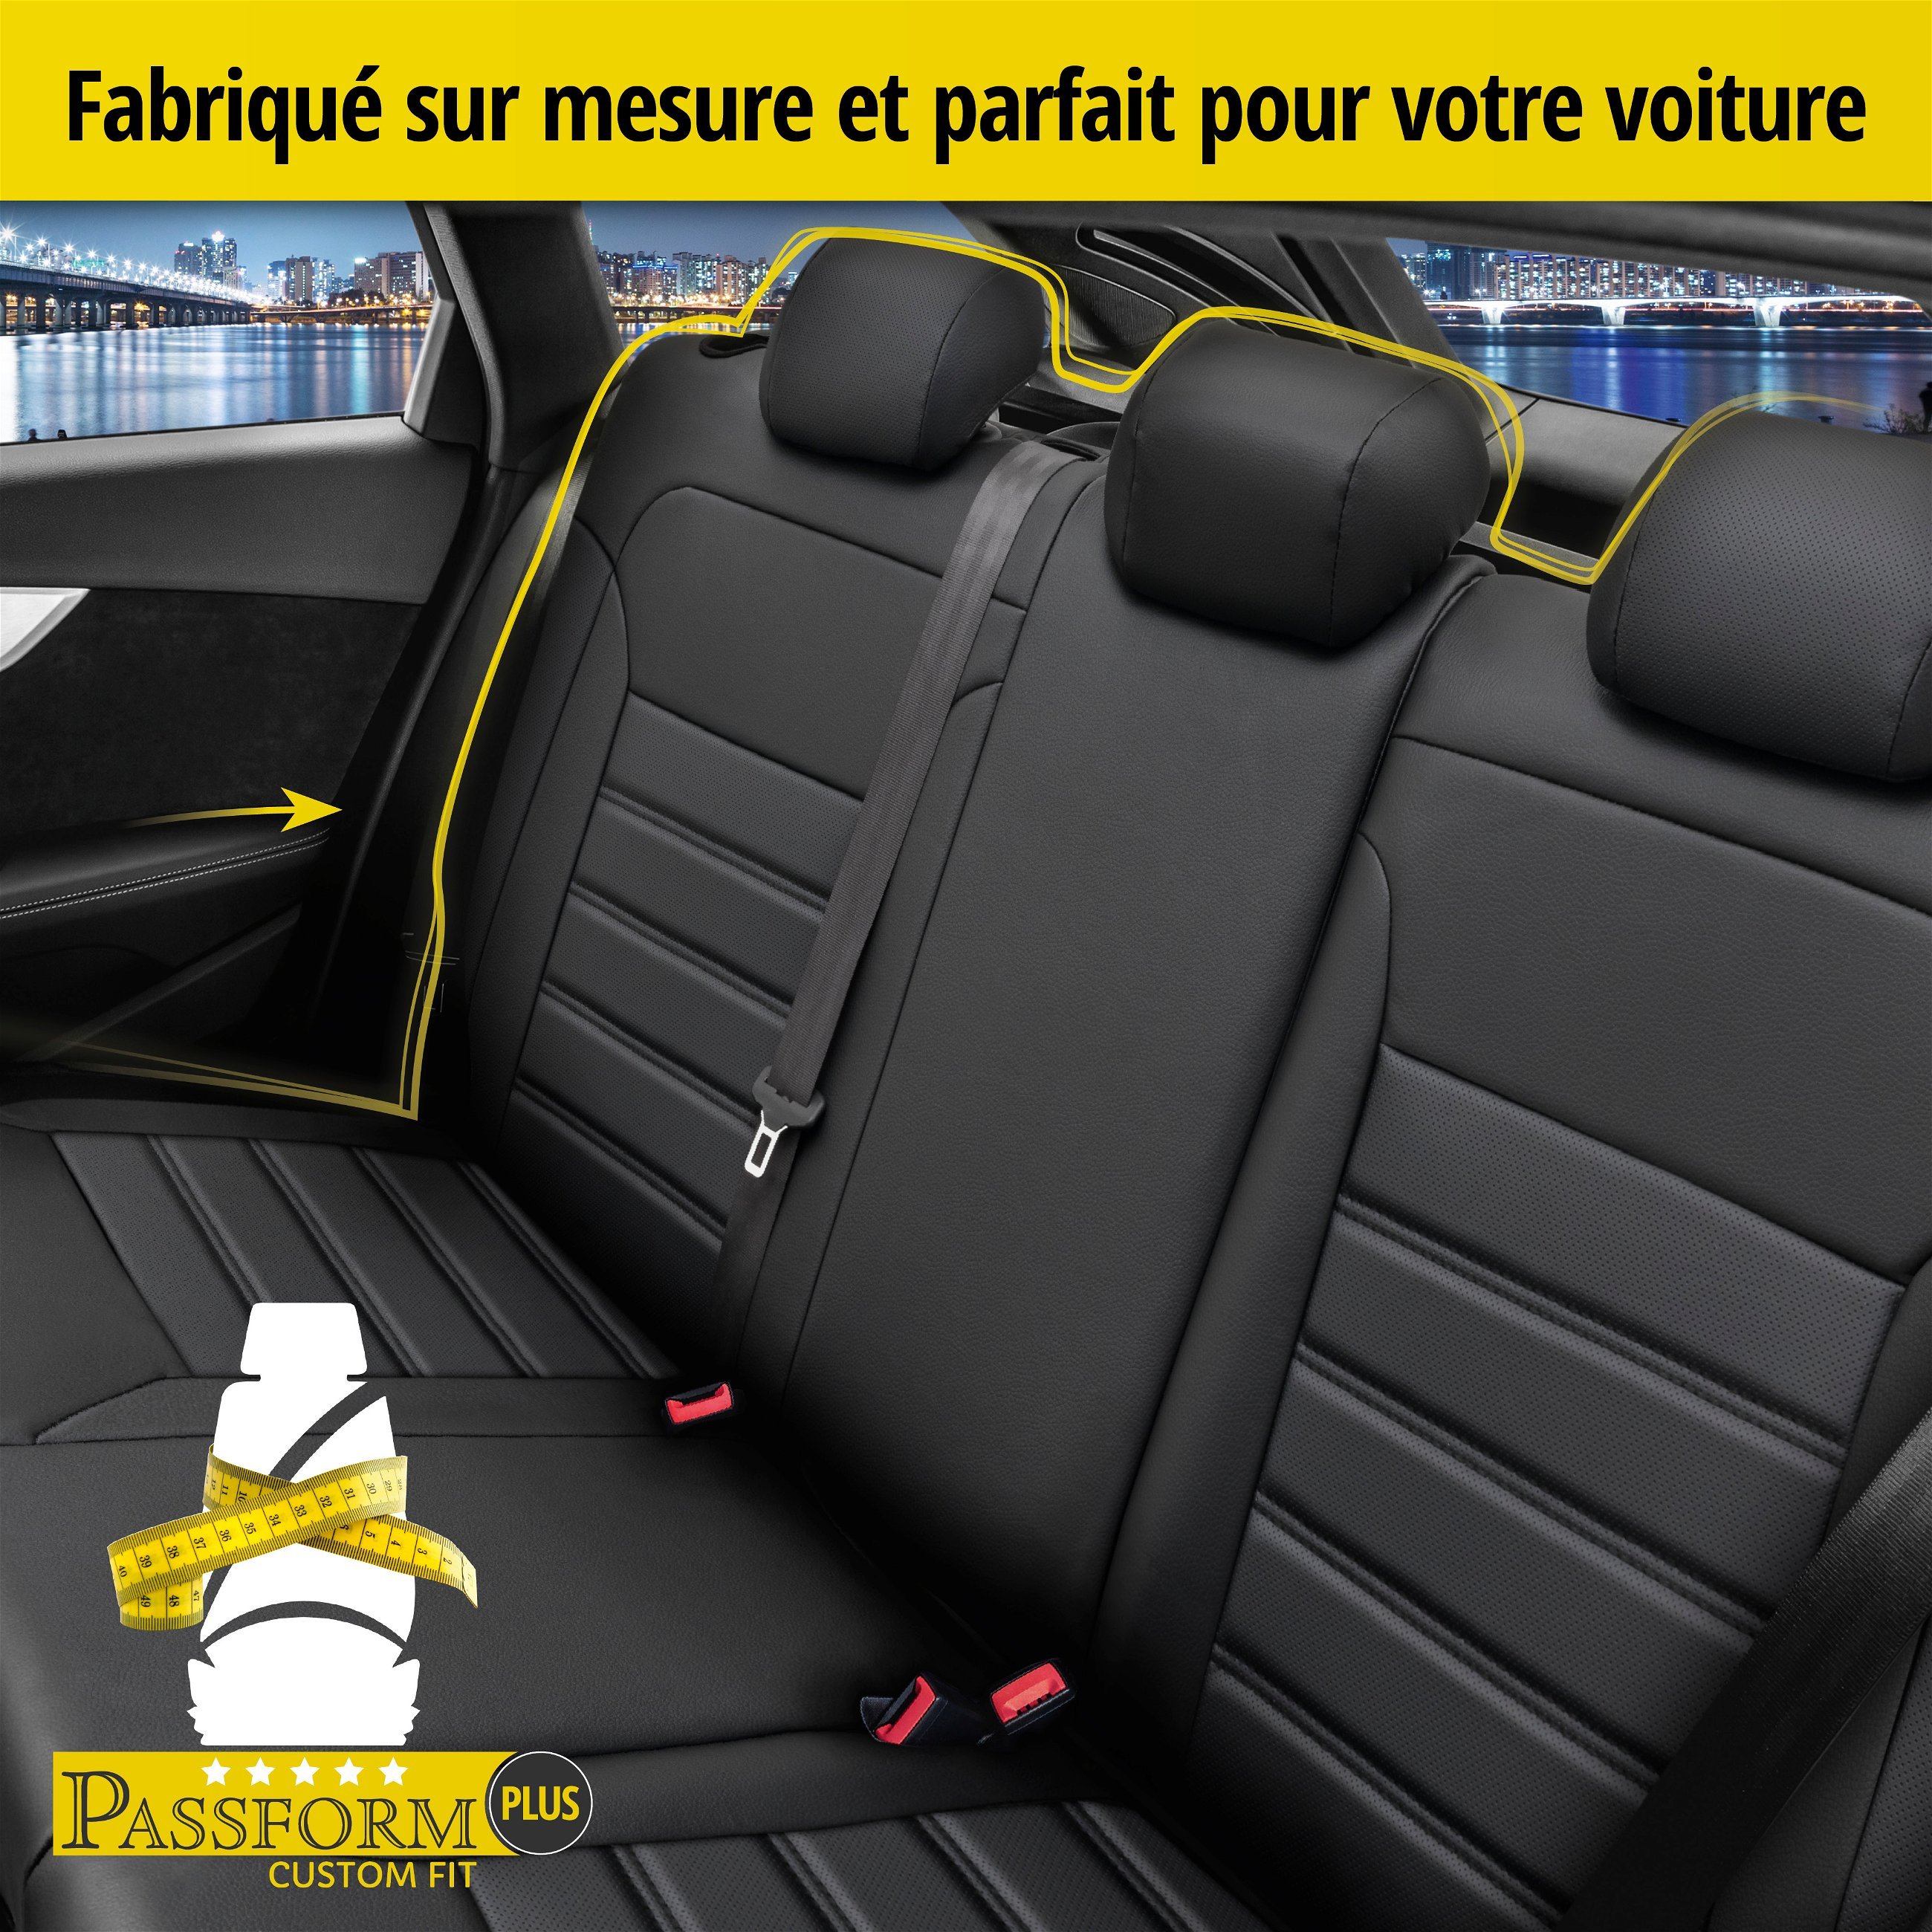 Housse de siège Robusto pour Audi A3 (8P1) 05/2003-12/2013, 1 housse de siège arrière pour les sièges sport